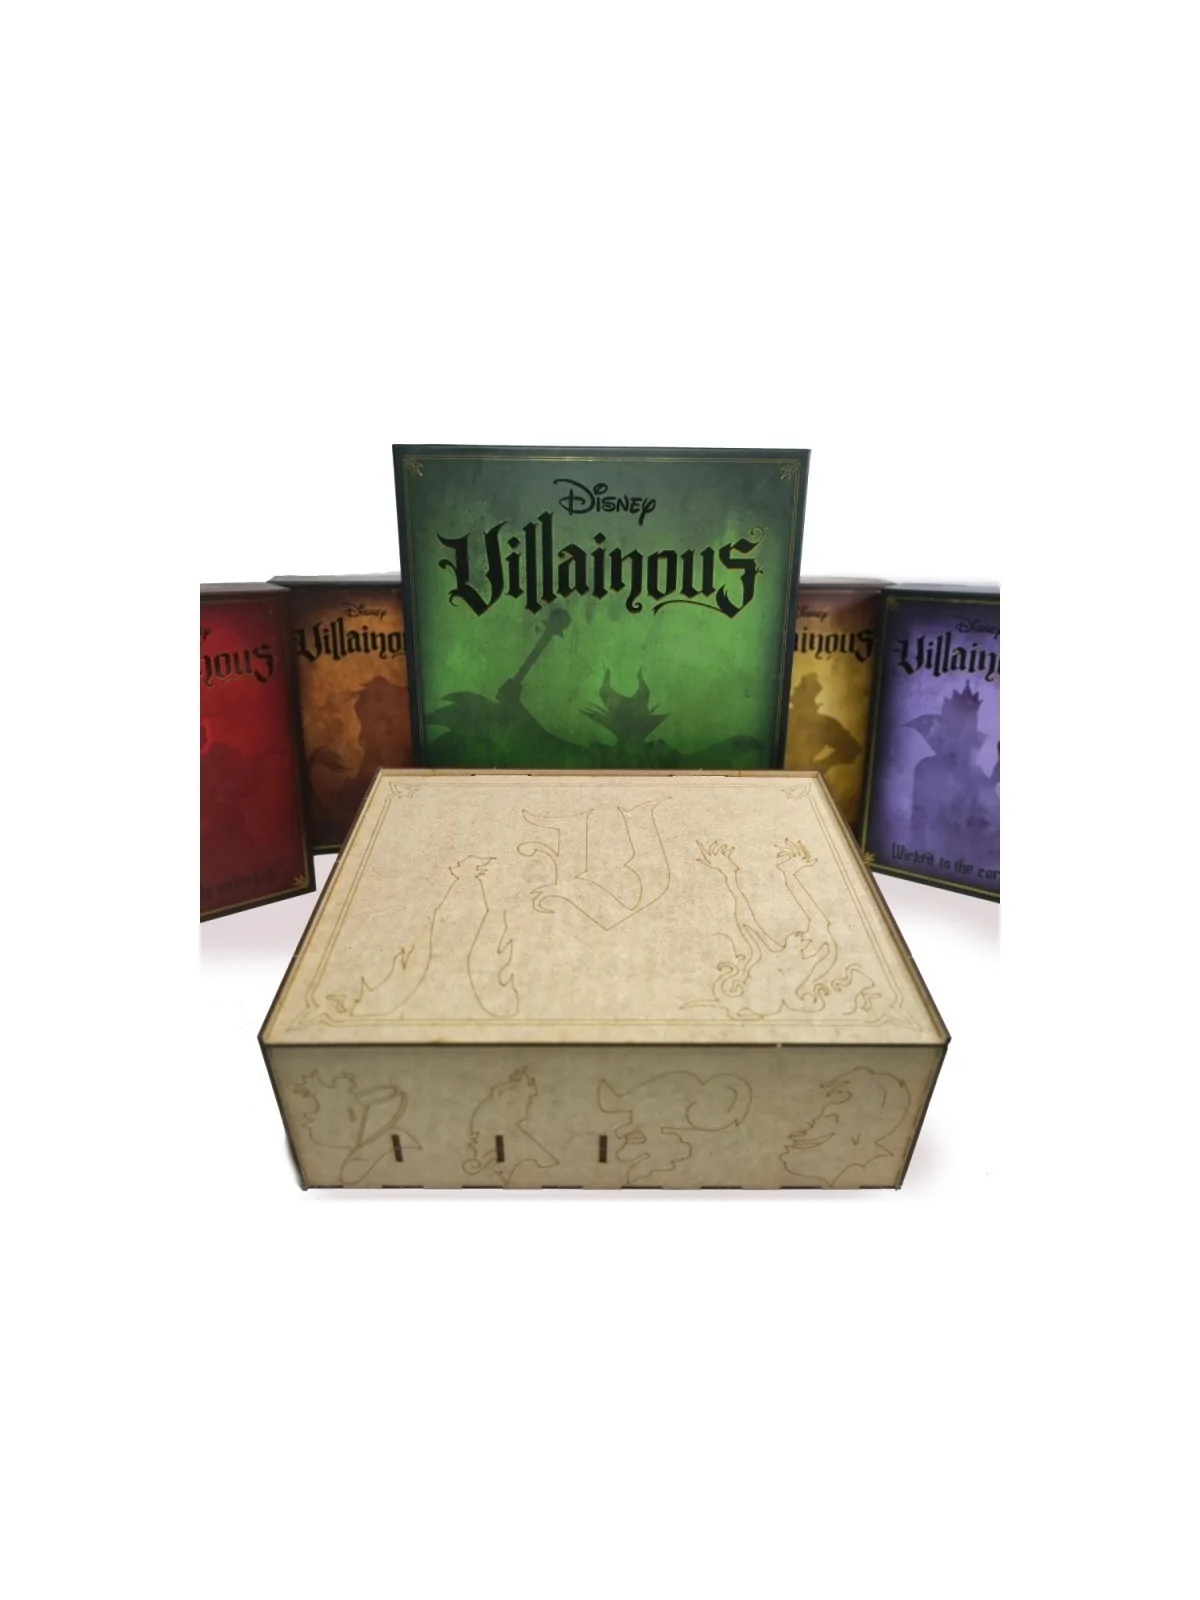 Comprar Caja Compatible con Villainous (Disney) barato al mejor precio